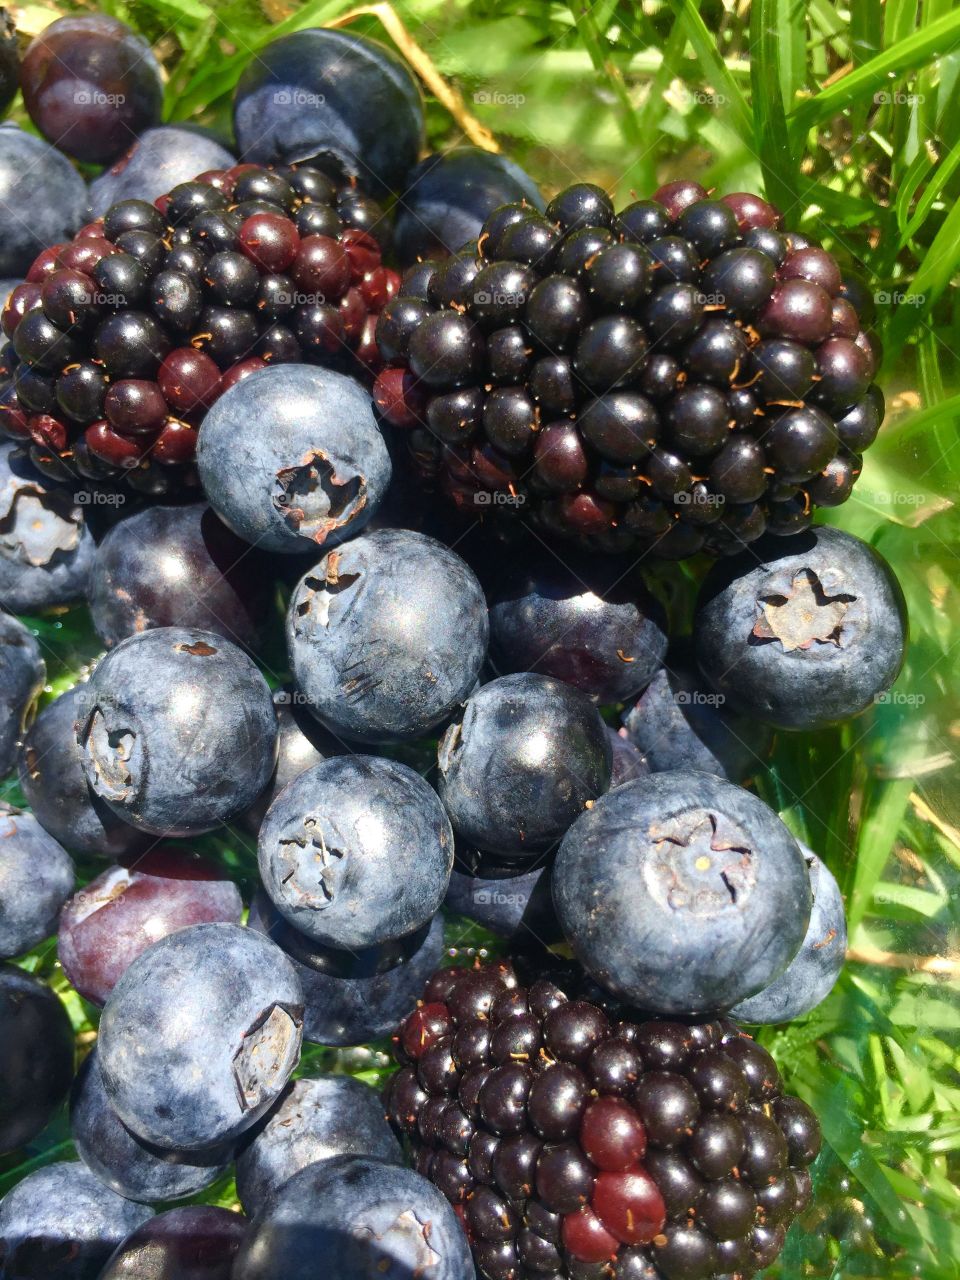 Blueberries and blackberries 